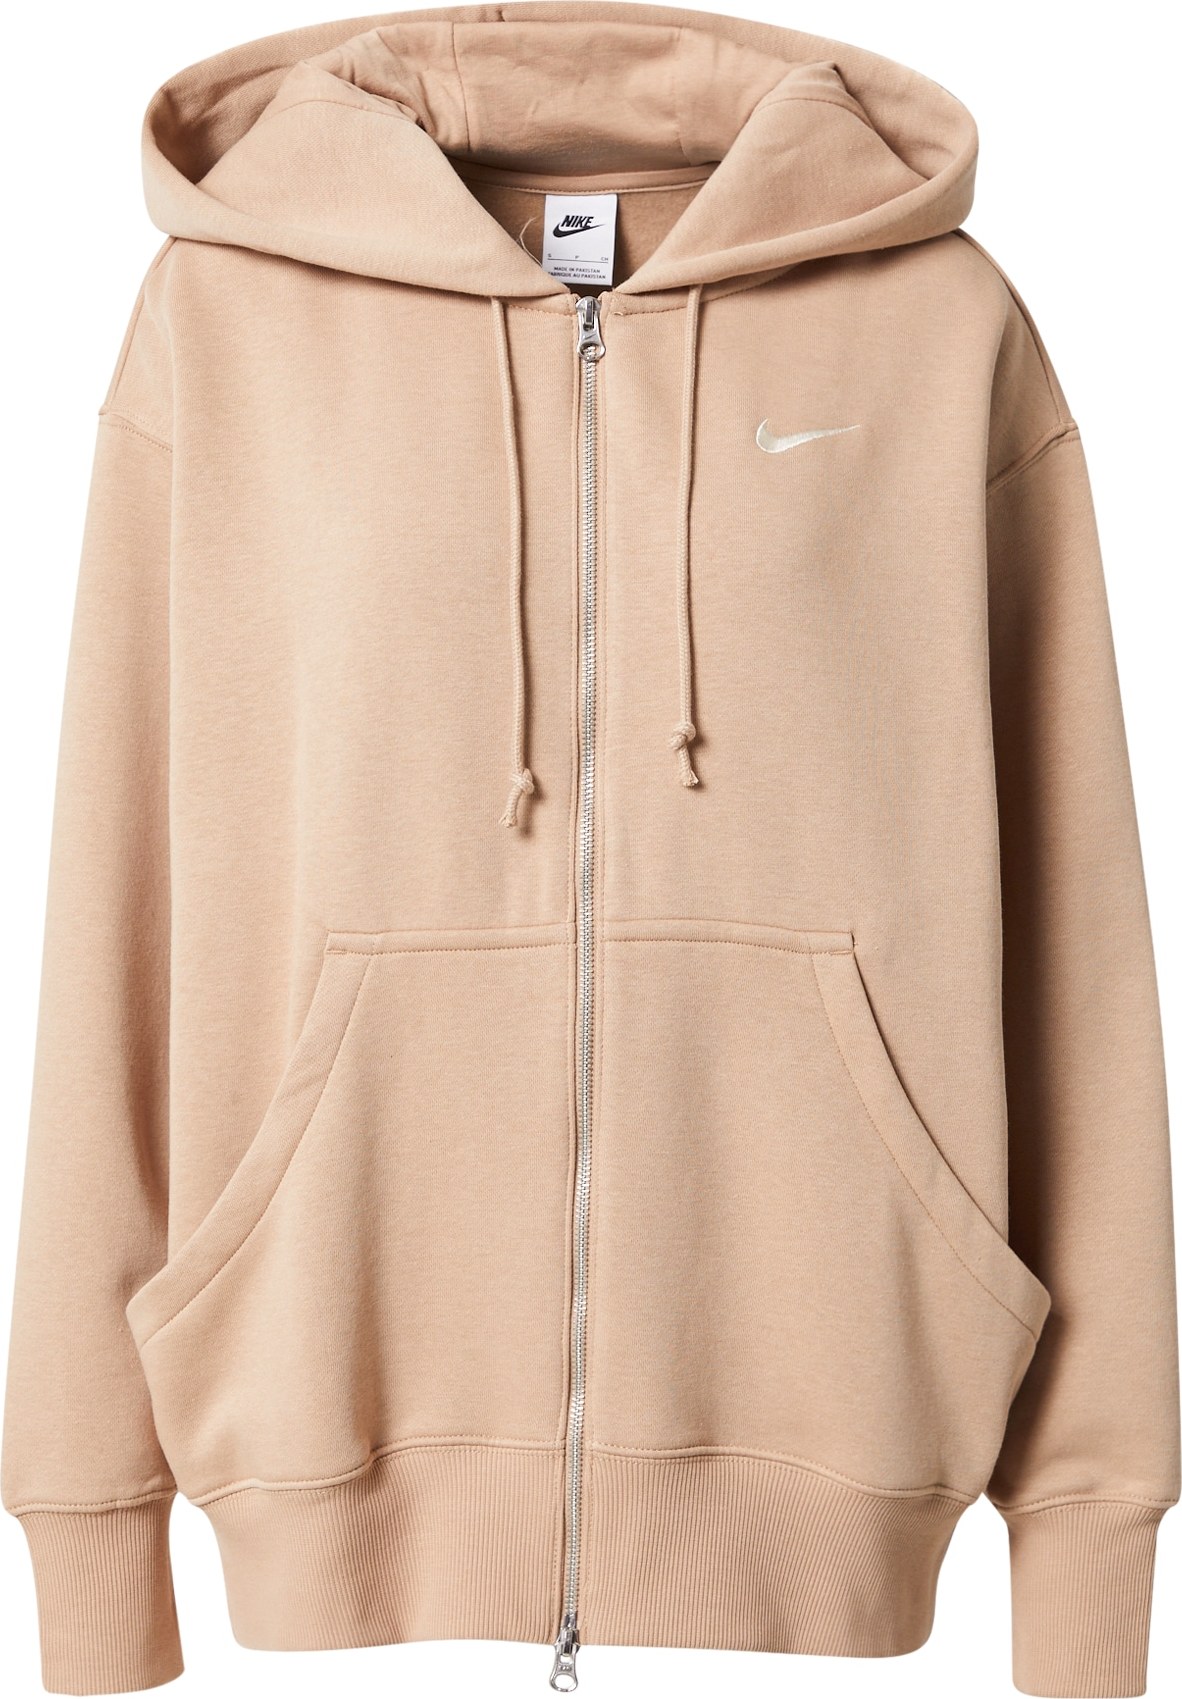 Nike Sportswear Mikina s kapucí velbloudí / bílá